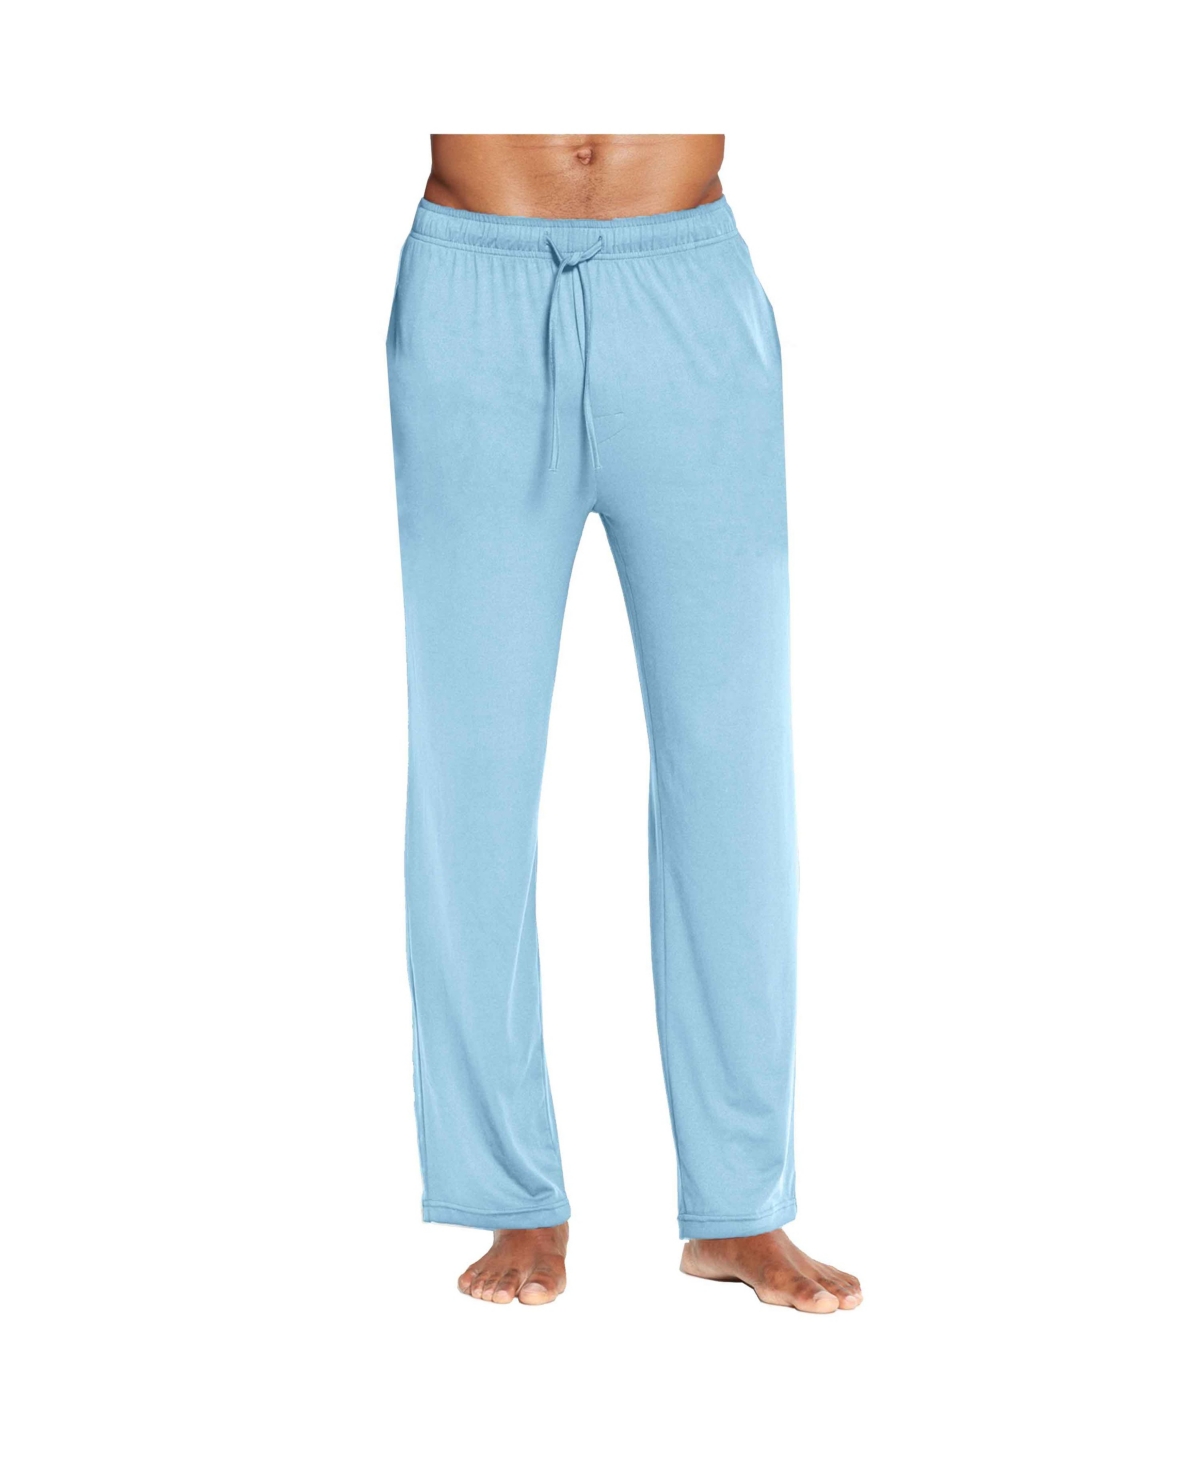 Men's Classic Lounge Pants - Blue